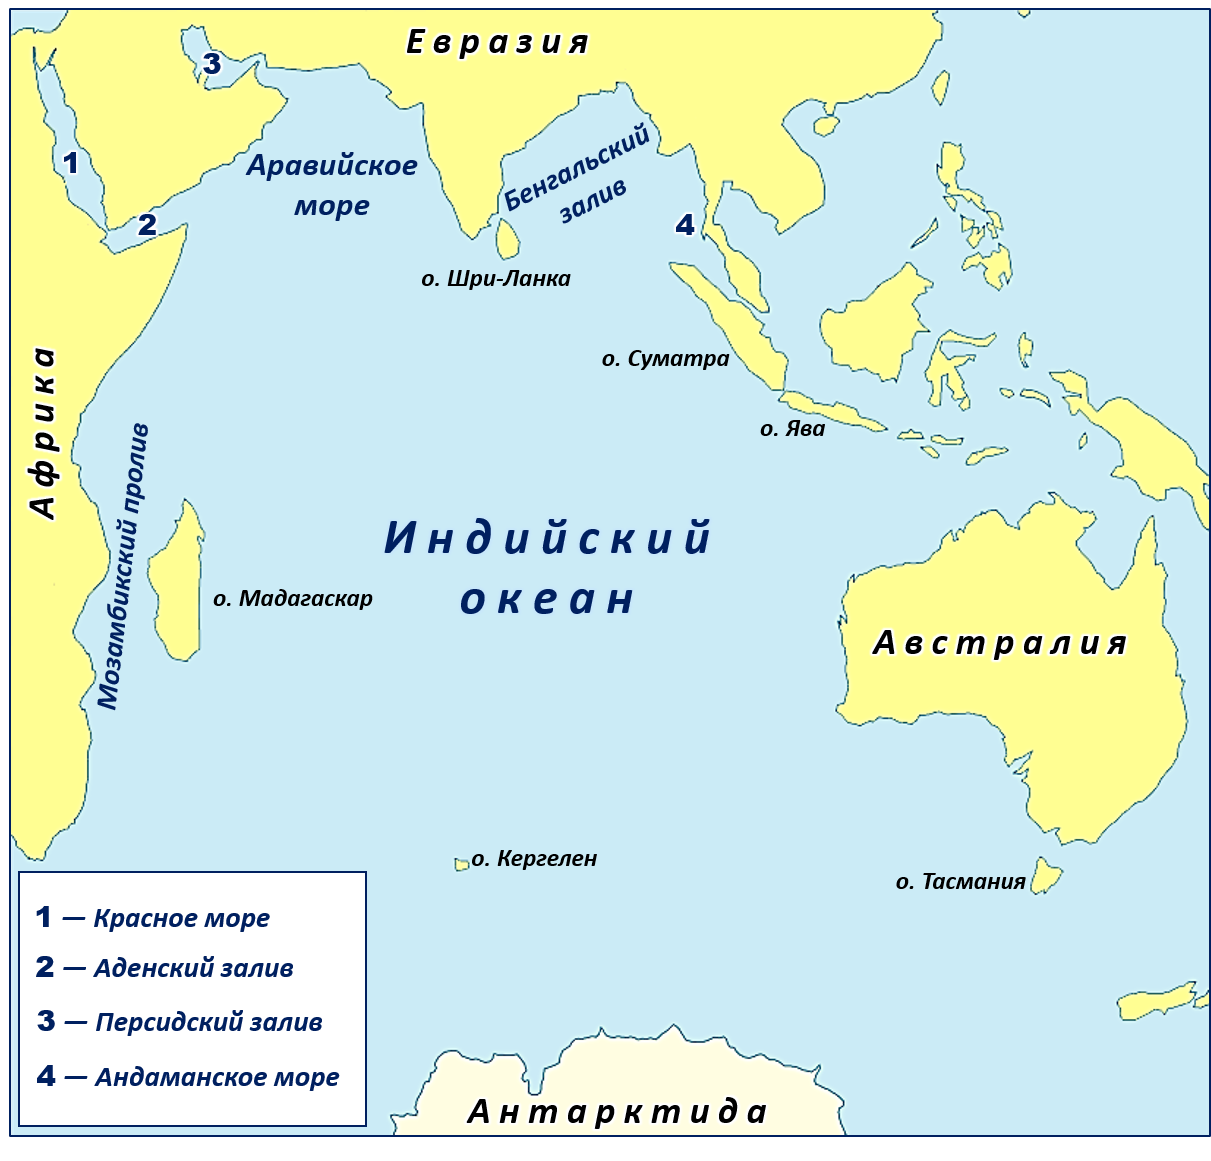 Название полуостровов тихого океана. Карта индийского океана с морями заливами и проливами. Новый Континент в индийском океане. Крупнейшие моря индийского океана на карте. Архипелаг Кергелен новый Континент.